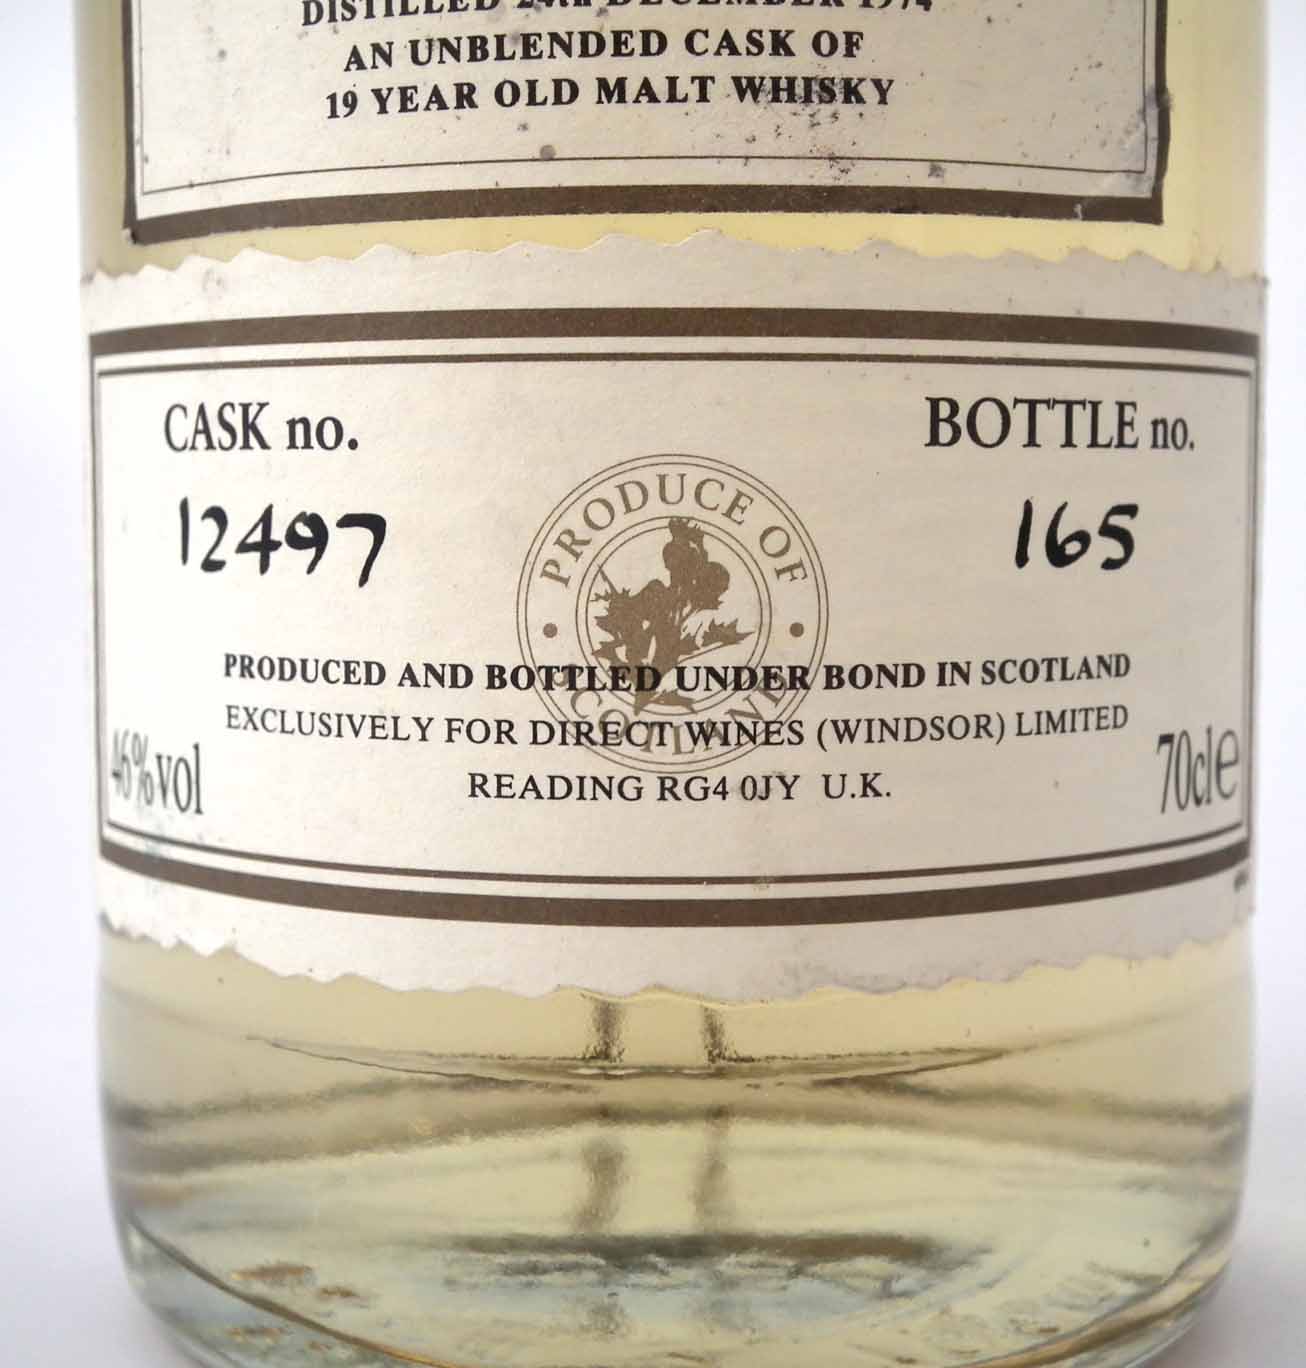 First cask 1974 Caol Ila Malt Whisky, cask no. 12497, bottle no. 165, 70cl (1 bottle) Condition - Image 3 of 4